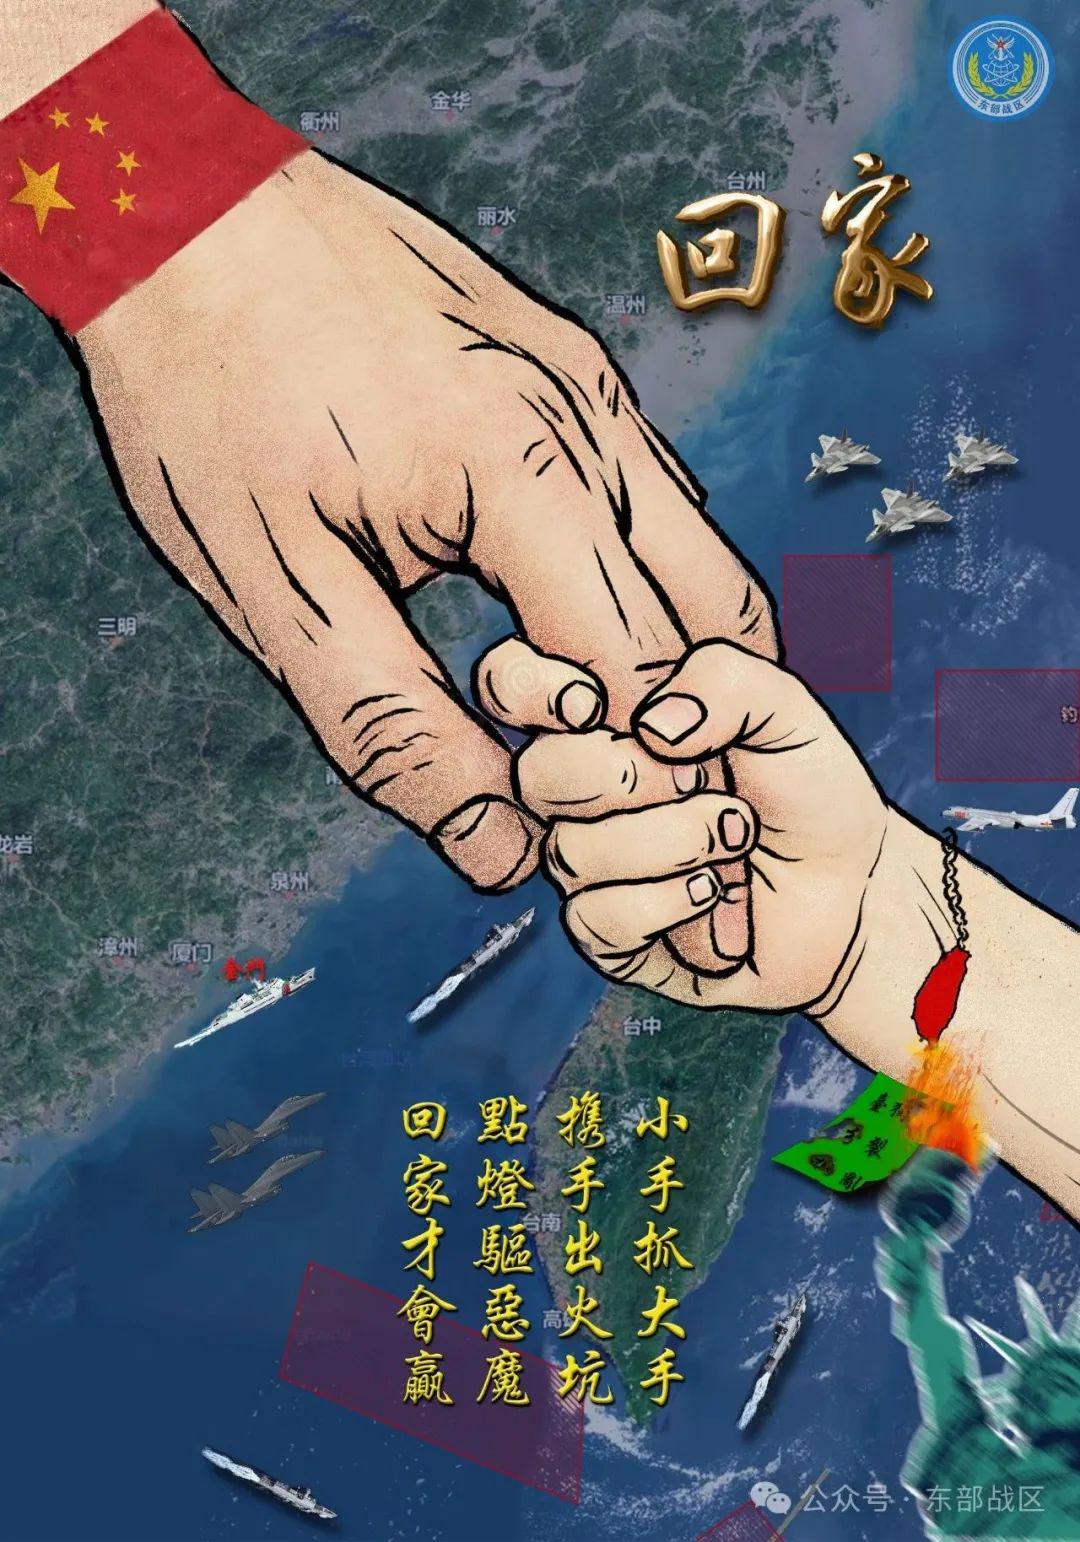 吴蔚：海报有玄机，东部战区“画里有话”